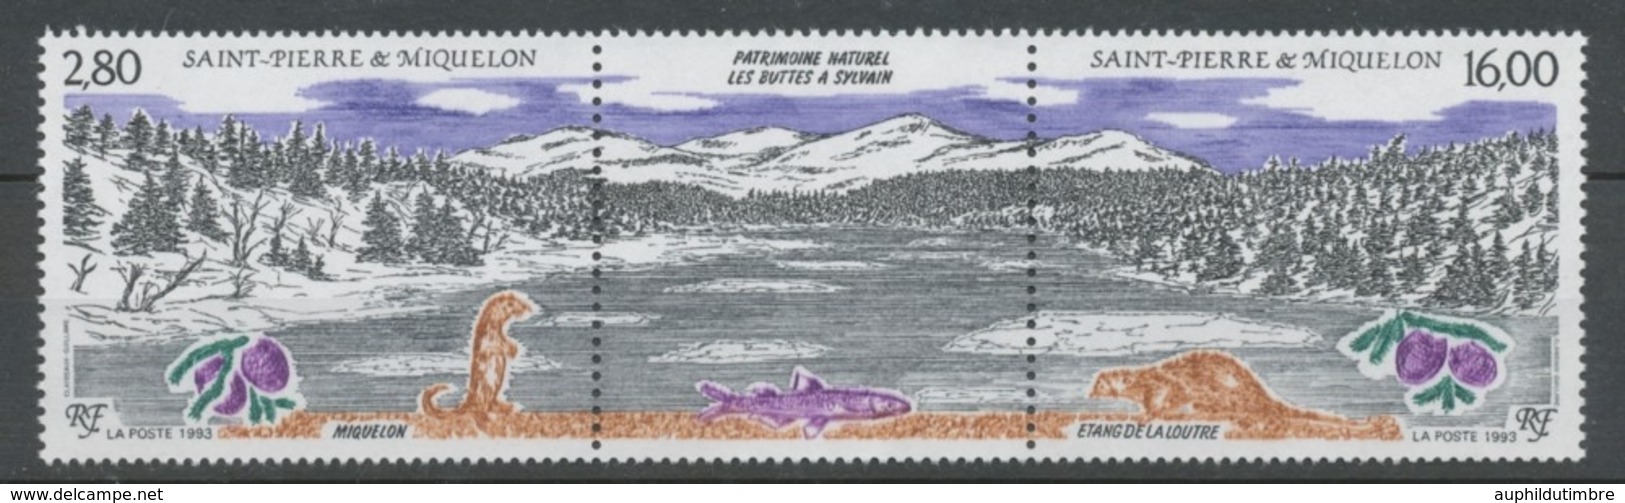 SPM  N°586A Patrimoine Naturel Des Iles St-Pierre-et-Miquelon Le Triptyque Avec Vignette Centrale ZC586A - Ungebraucht